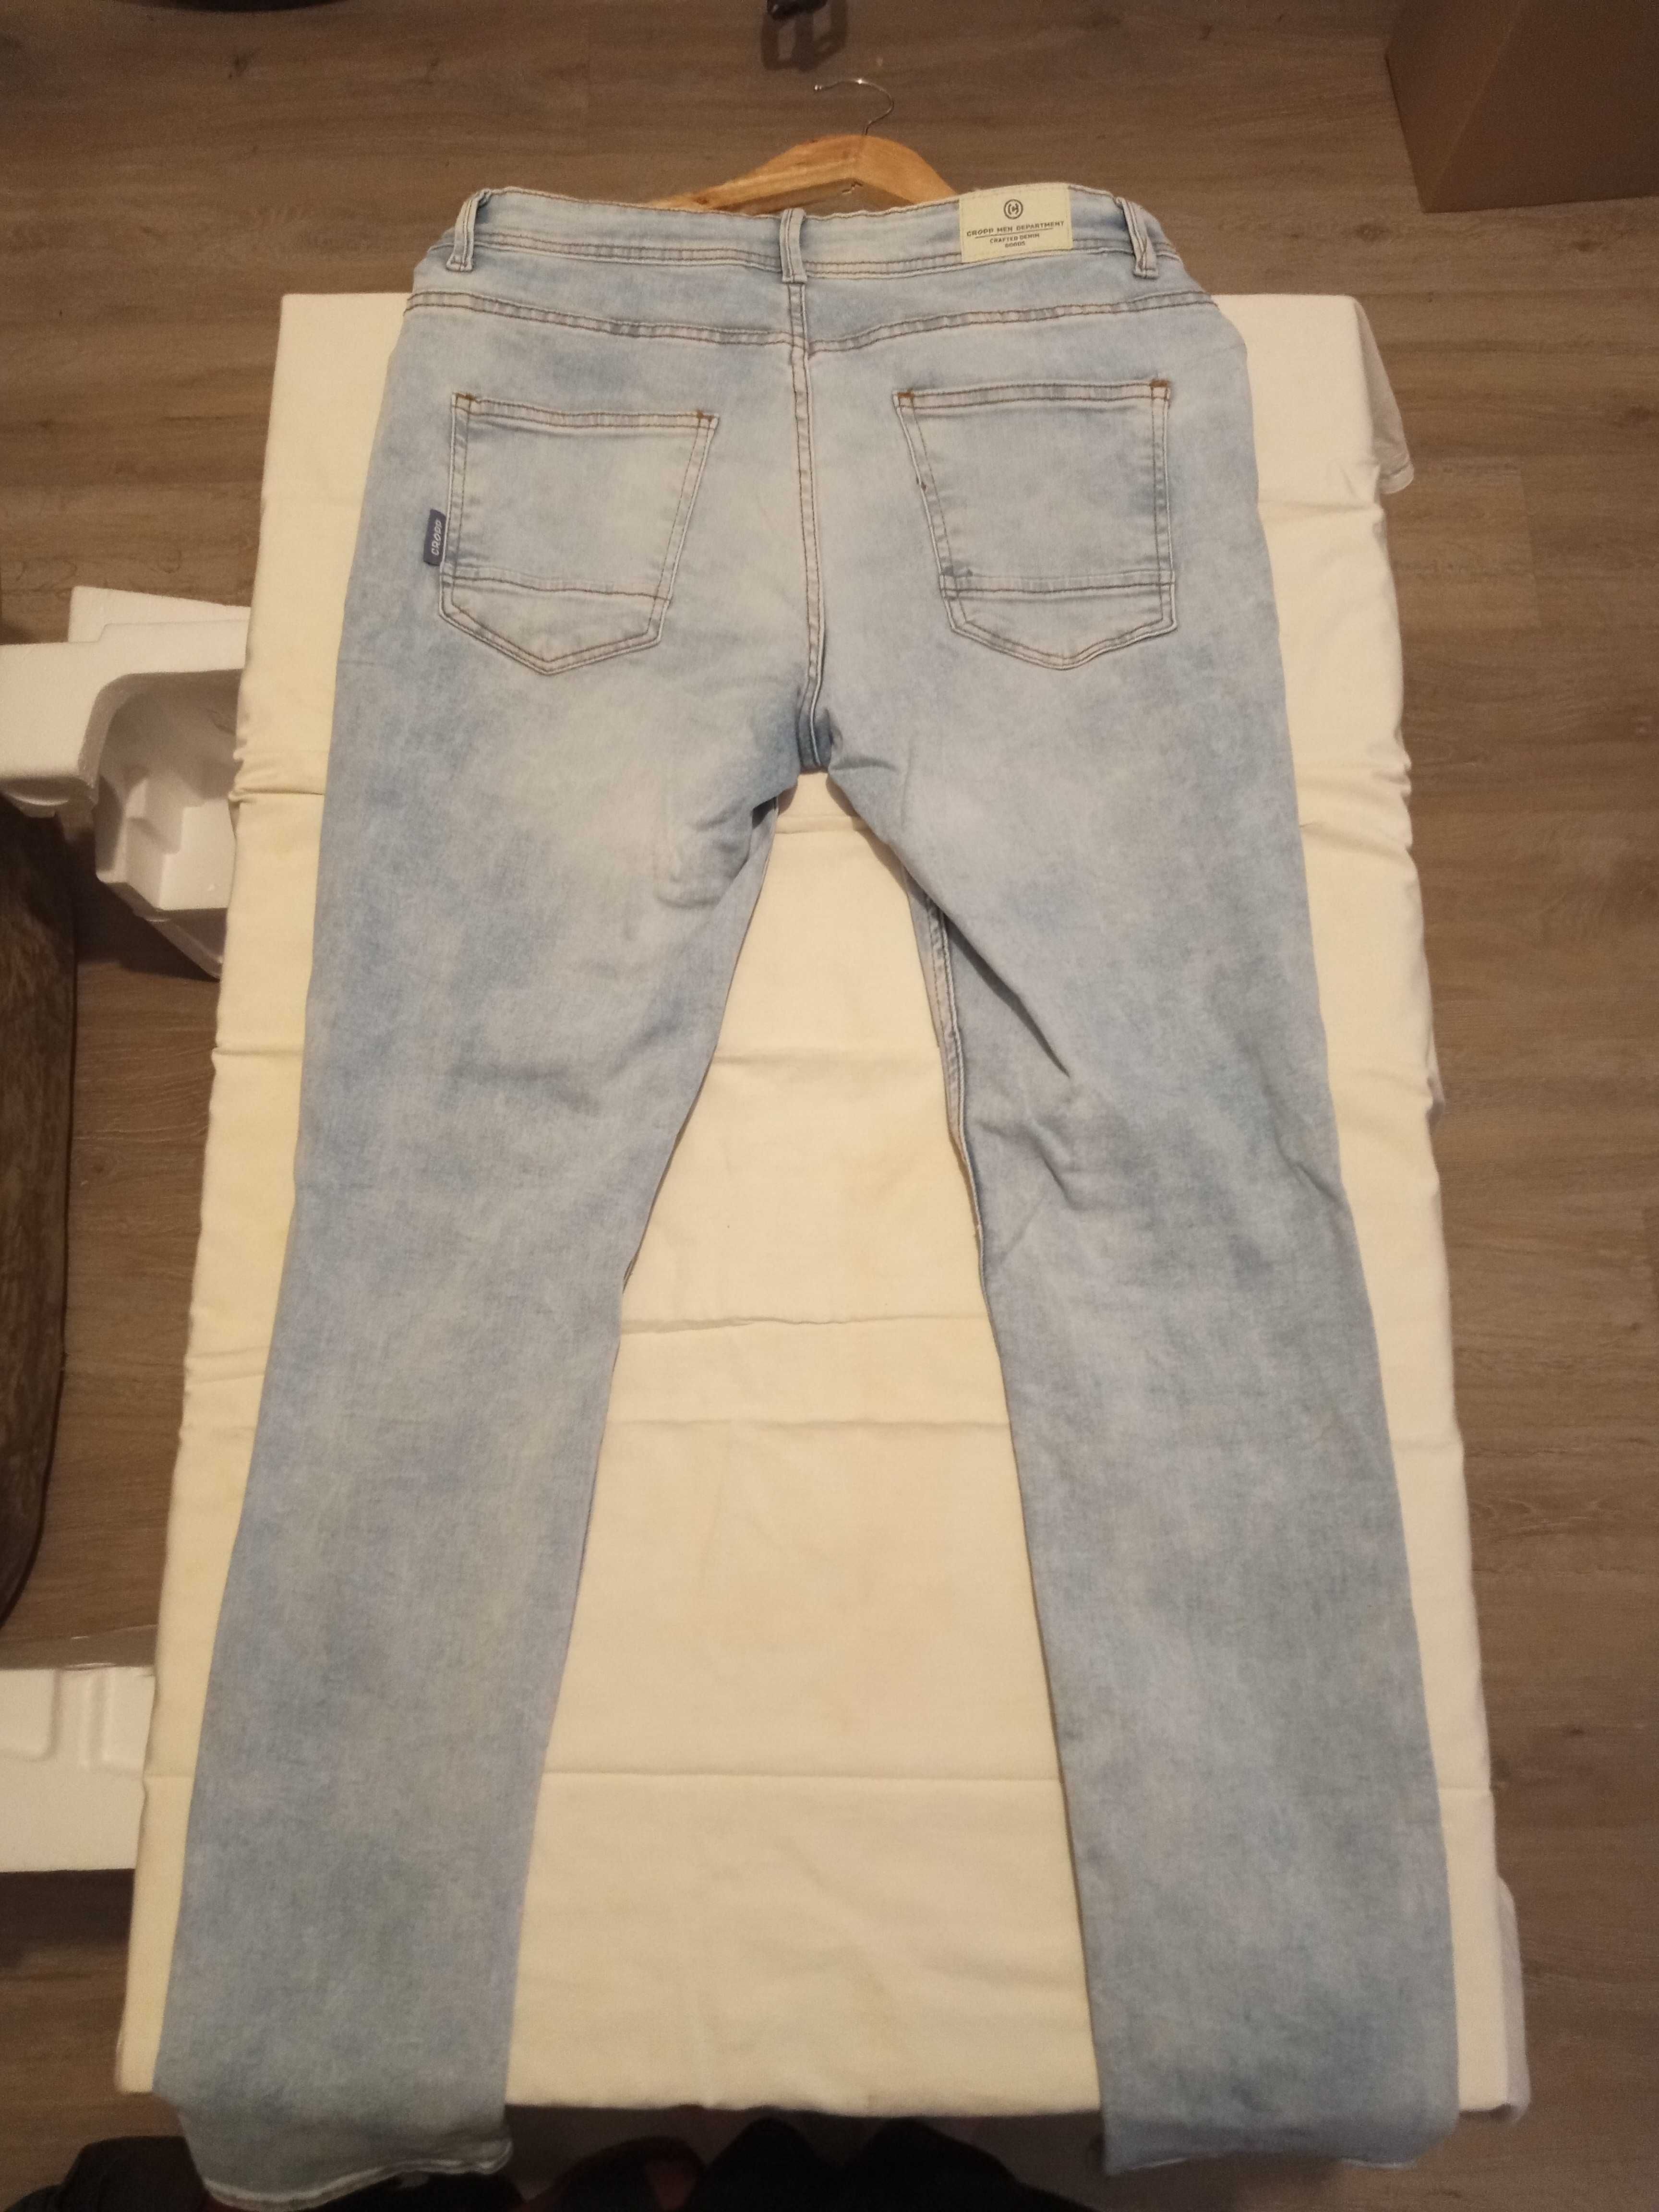 Spodnie jeansowe jasne wiosenne CROPP W28 L32 Slim Fit